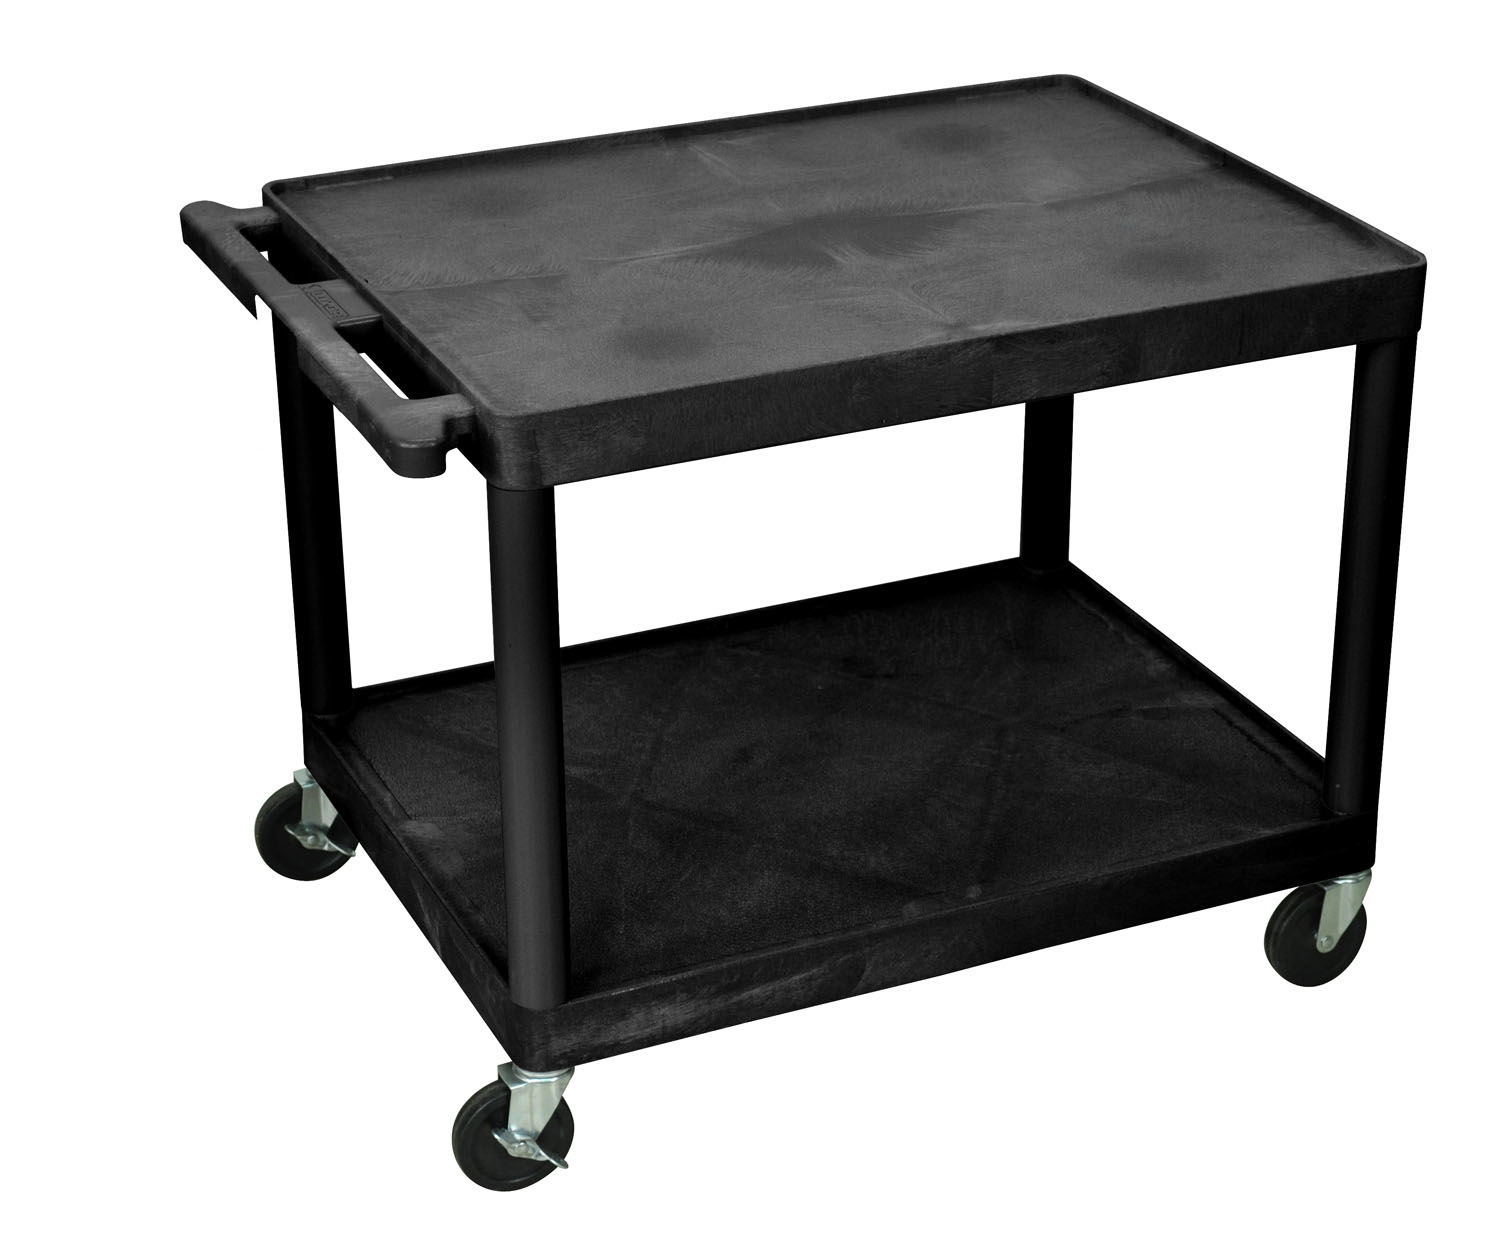 Luxor Mobile Multipurpose Av Presentation Cart 2 Plastic Open Shelves With Casters Black